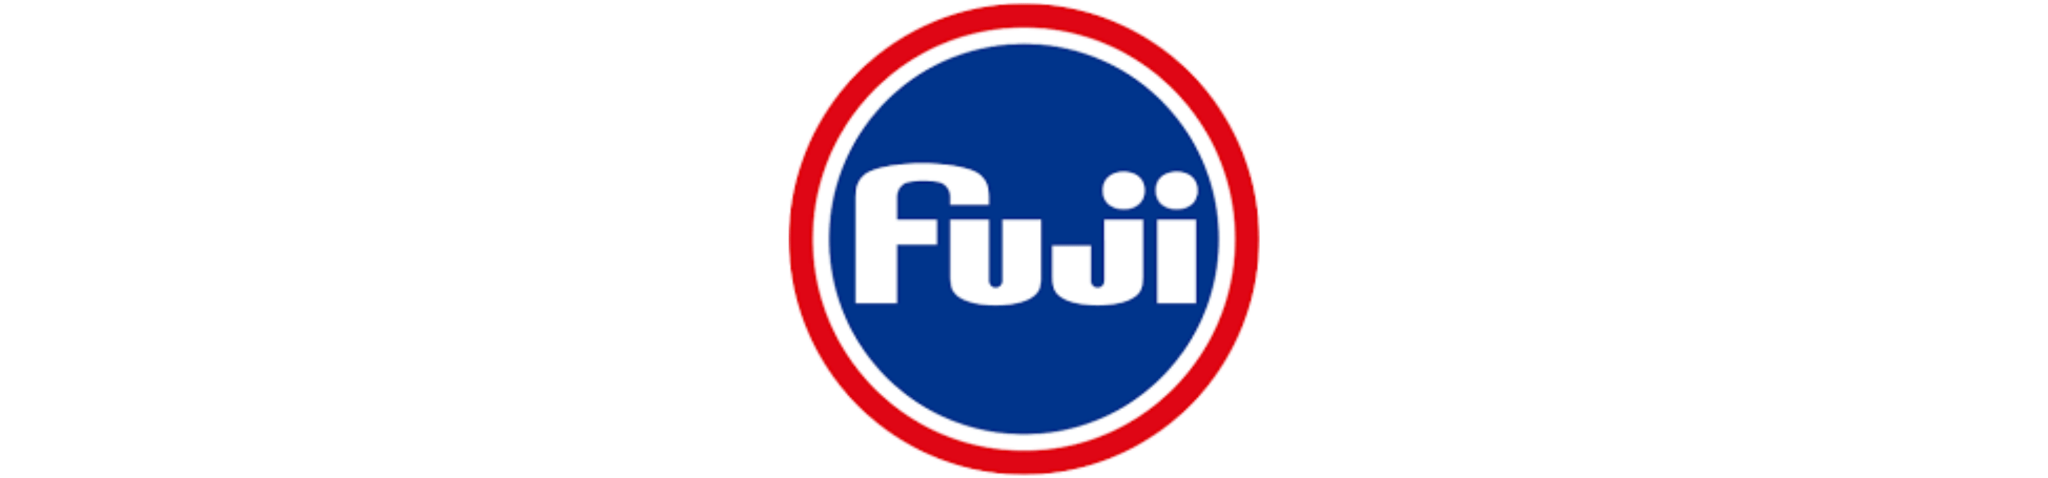 Fuji - fishermanshub